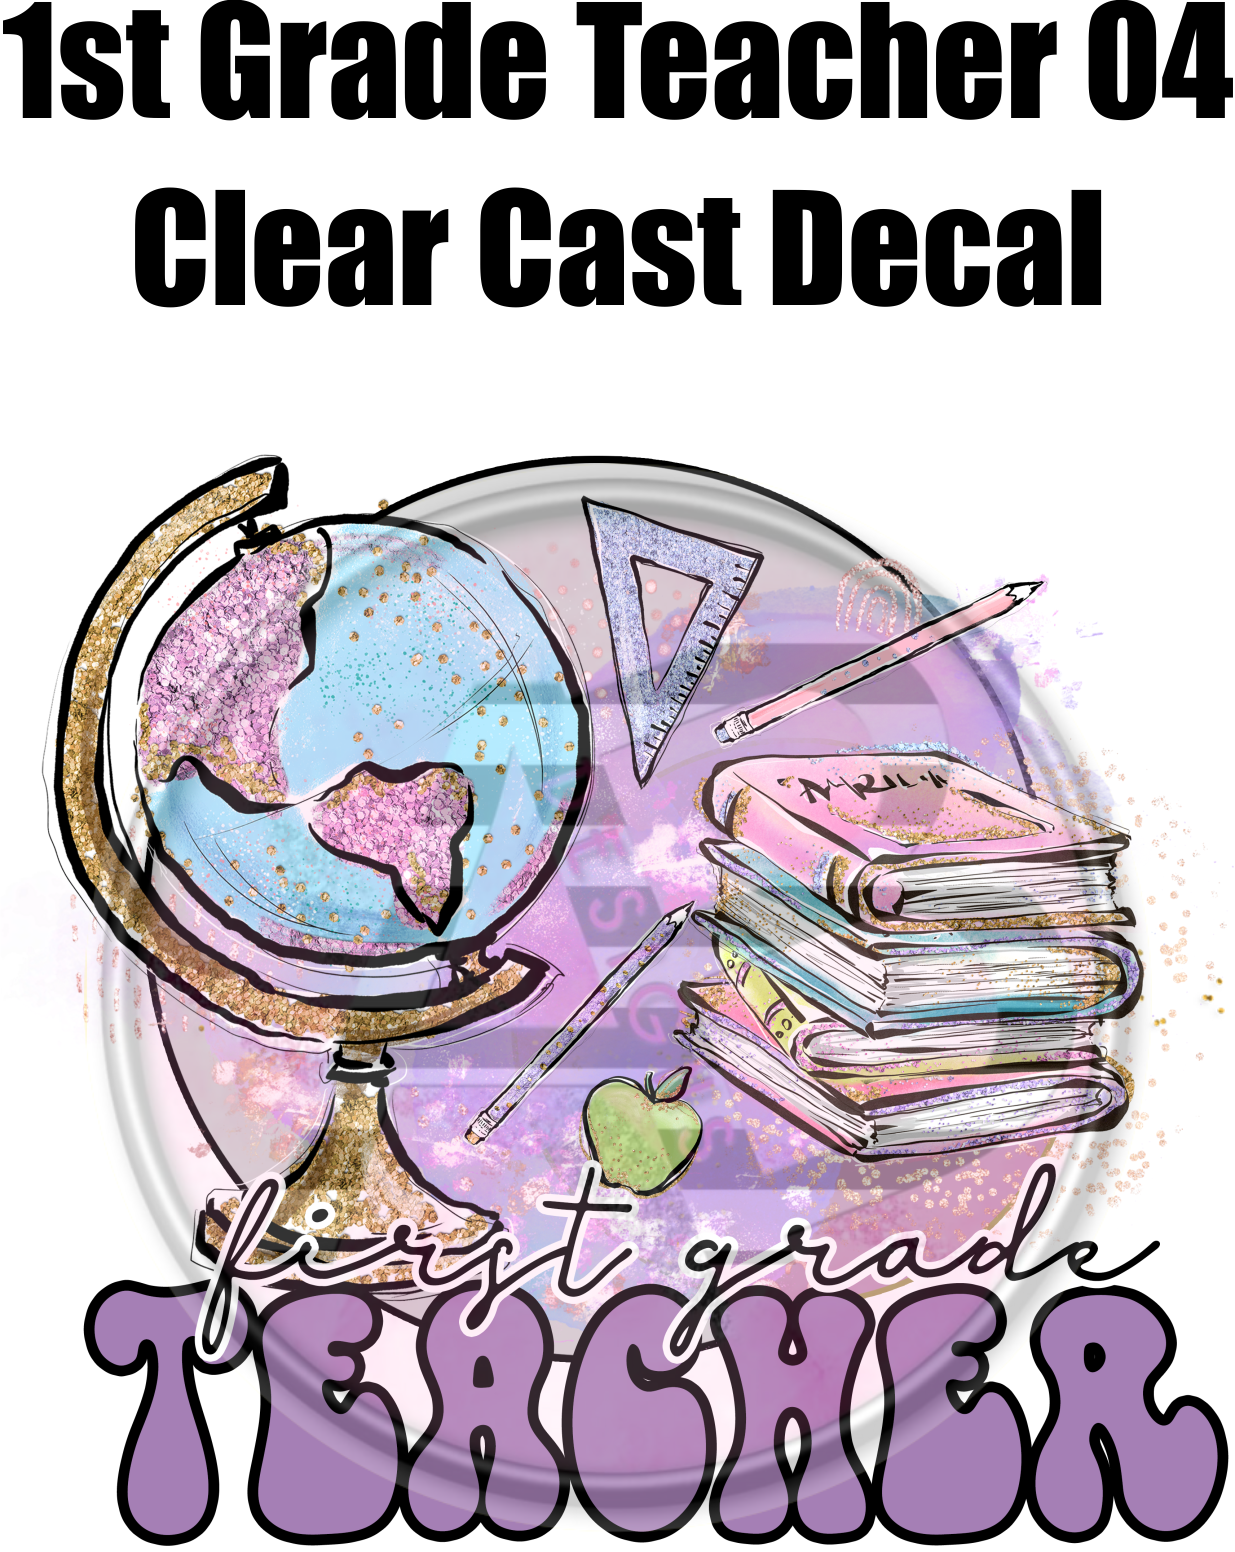 1st Grade Teacher 04 - Clear Cast Decal - 53